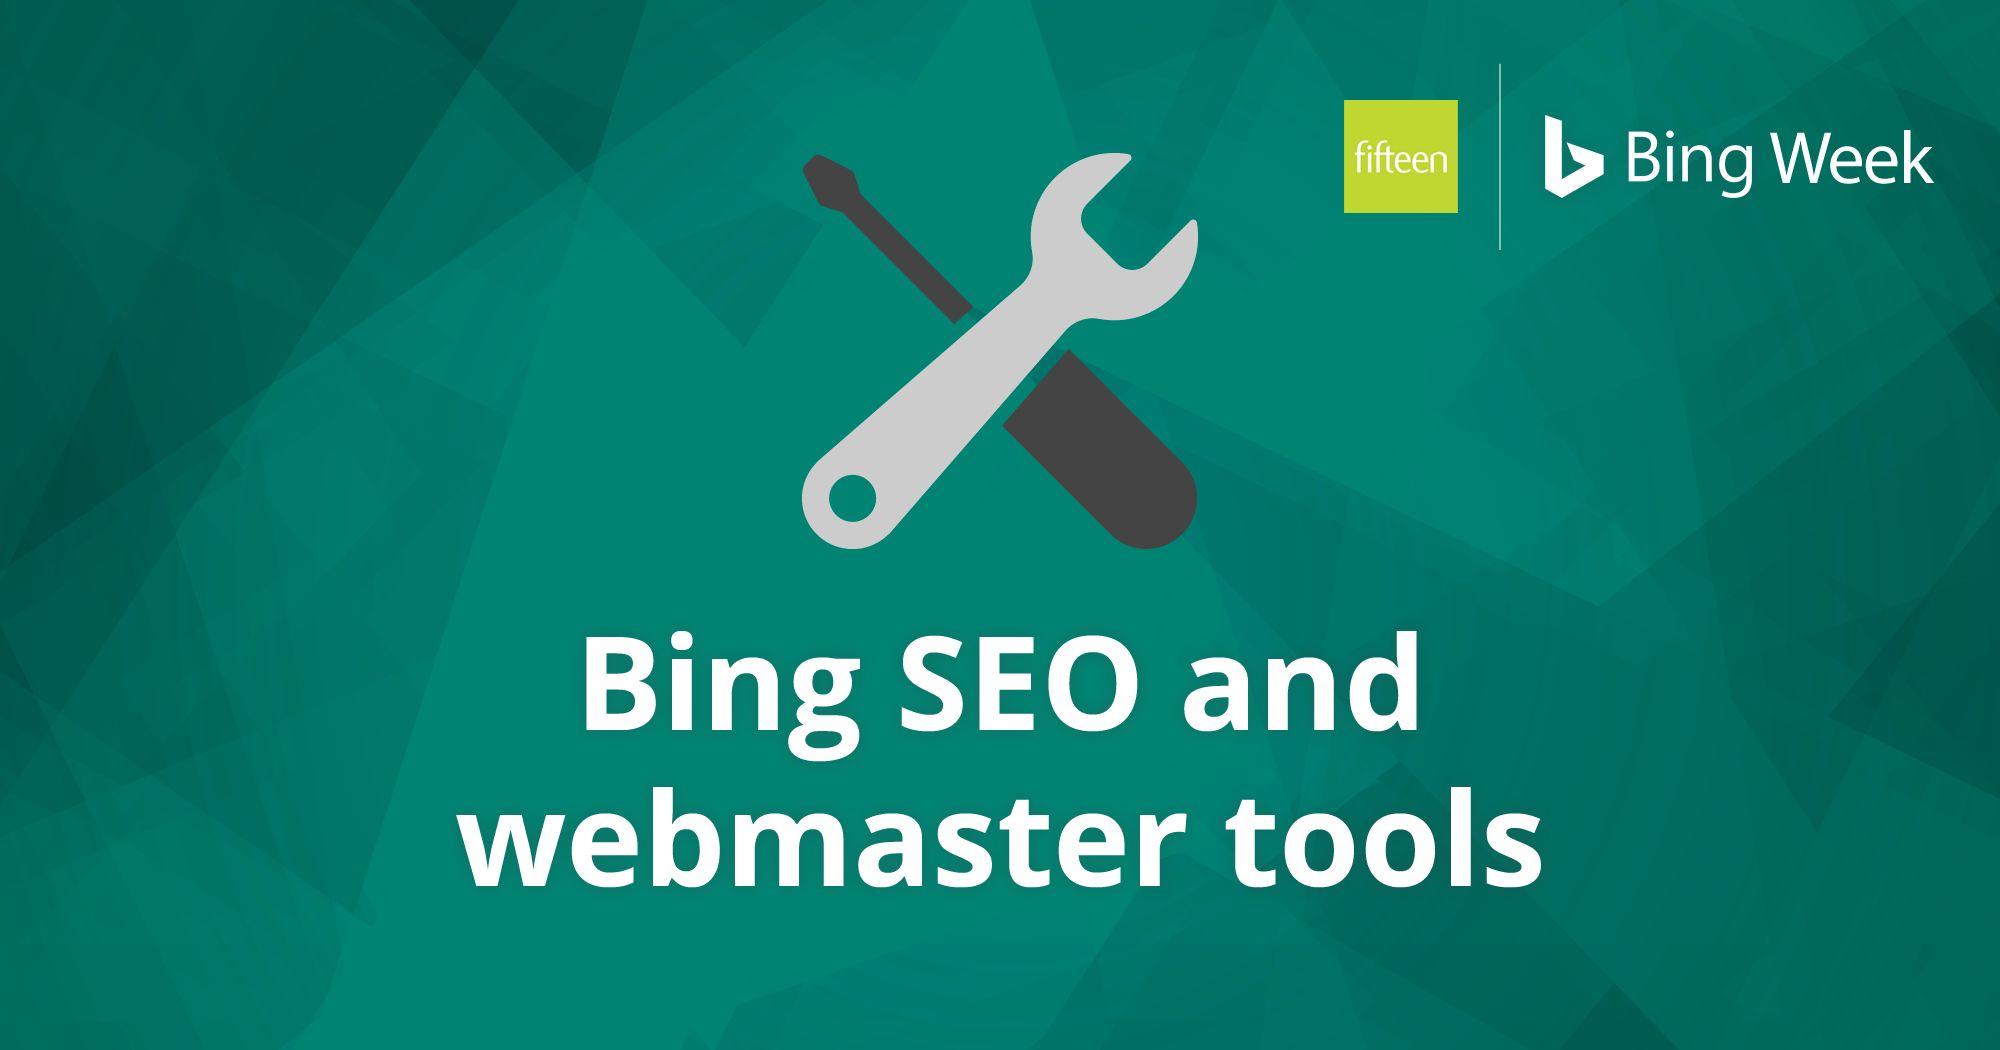 Bing Teal Logo - Bing's Future: Taking Over Google?